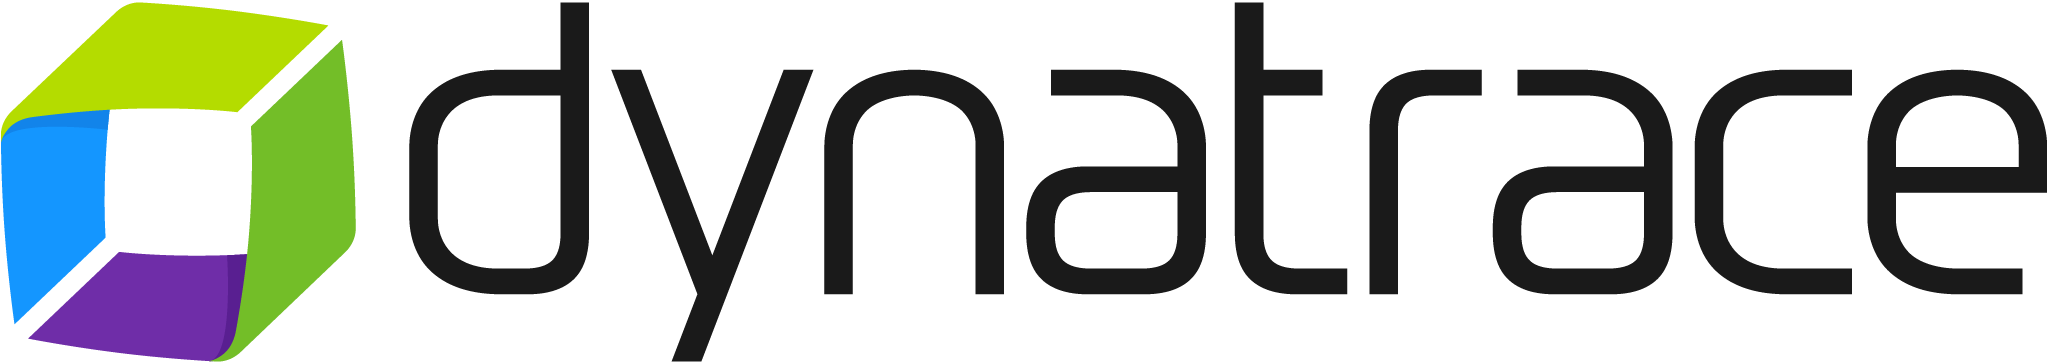 Dynatrace_logo